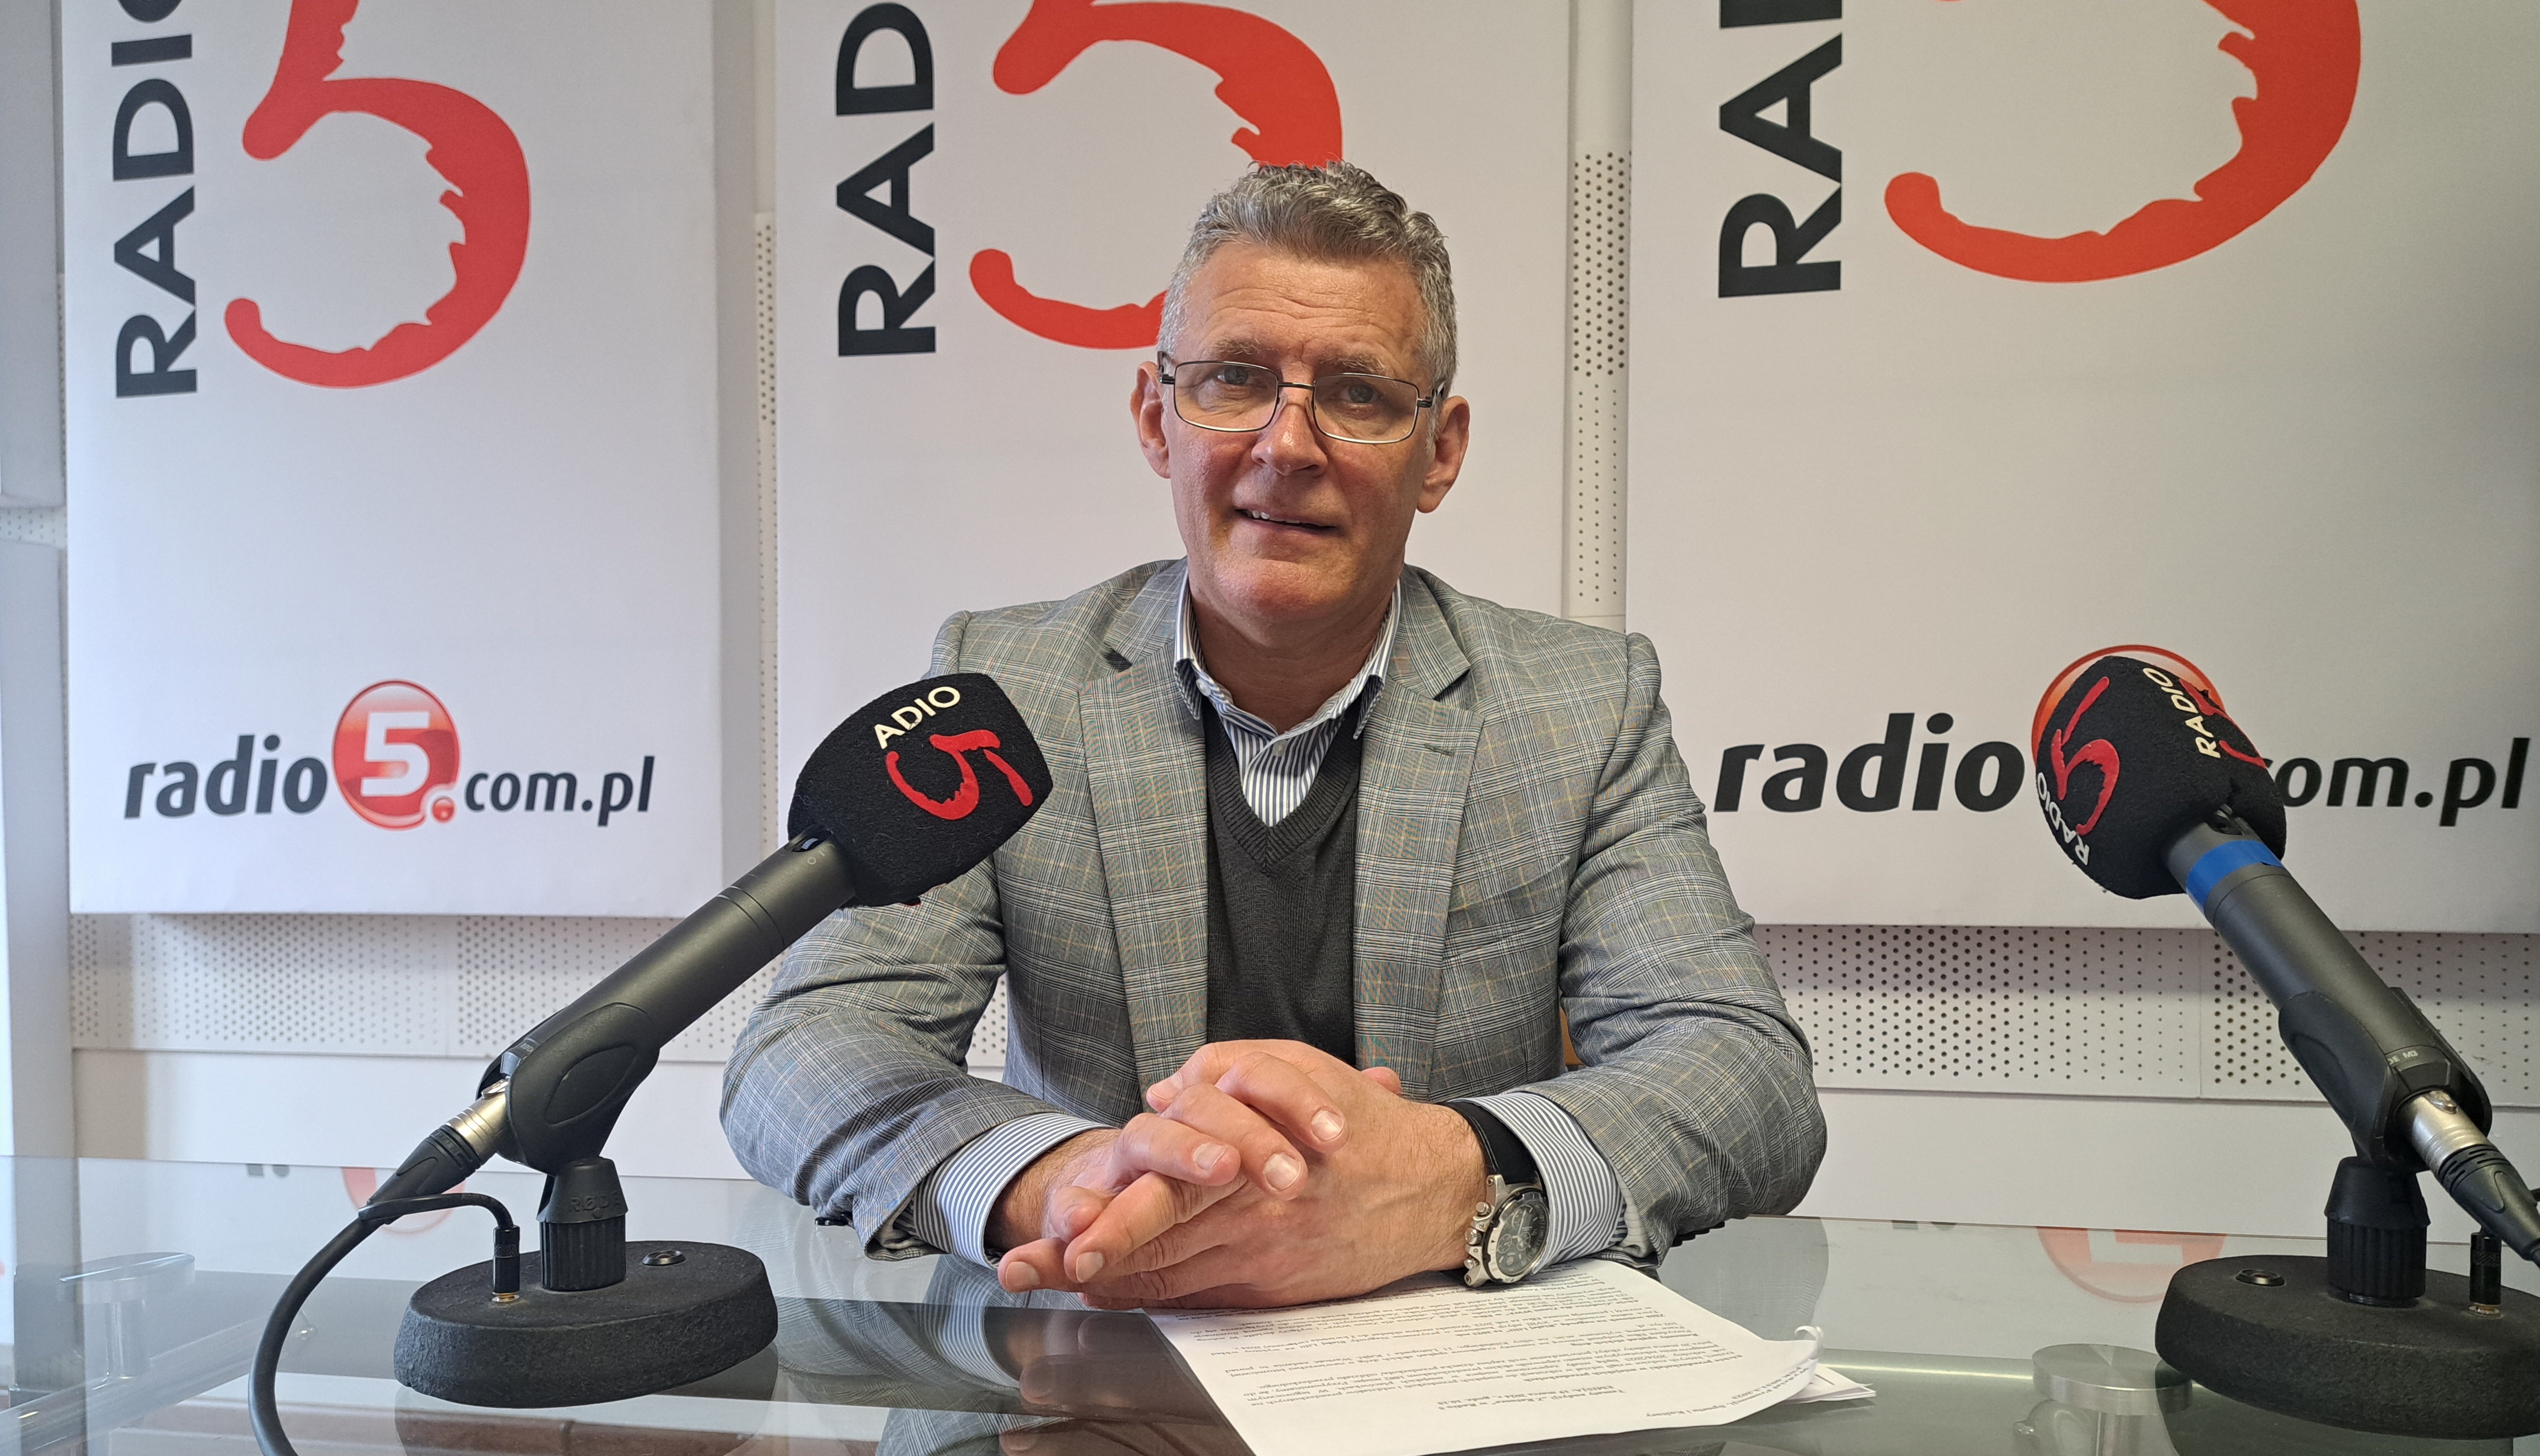 Artur Urbański, wiceprezydent Ełku/Fot. Radio 5